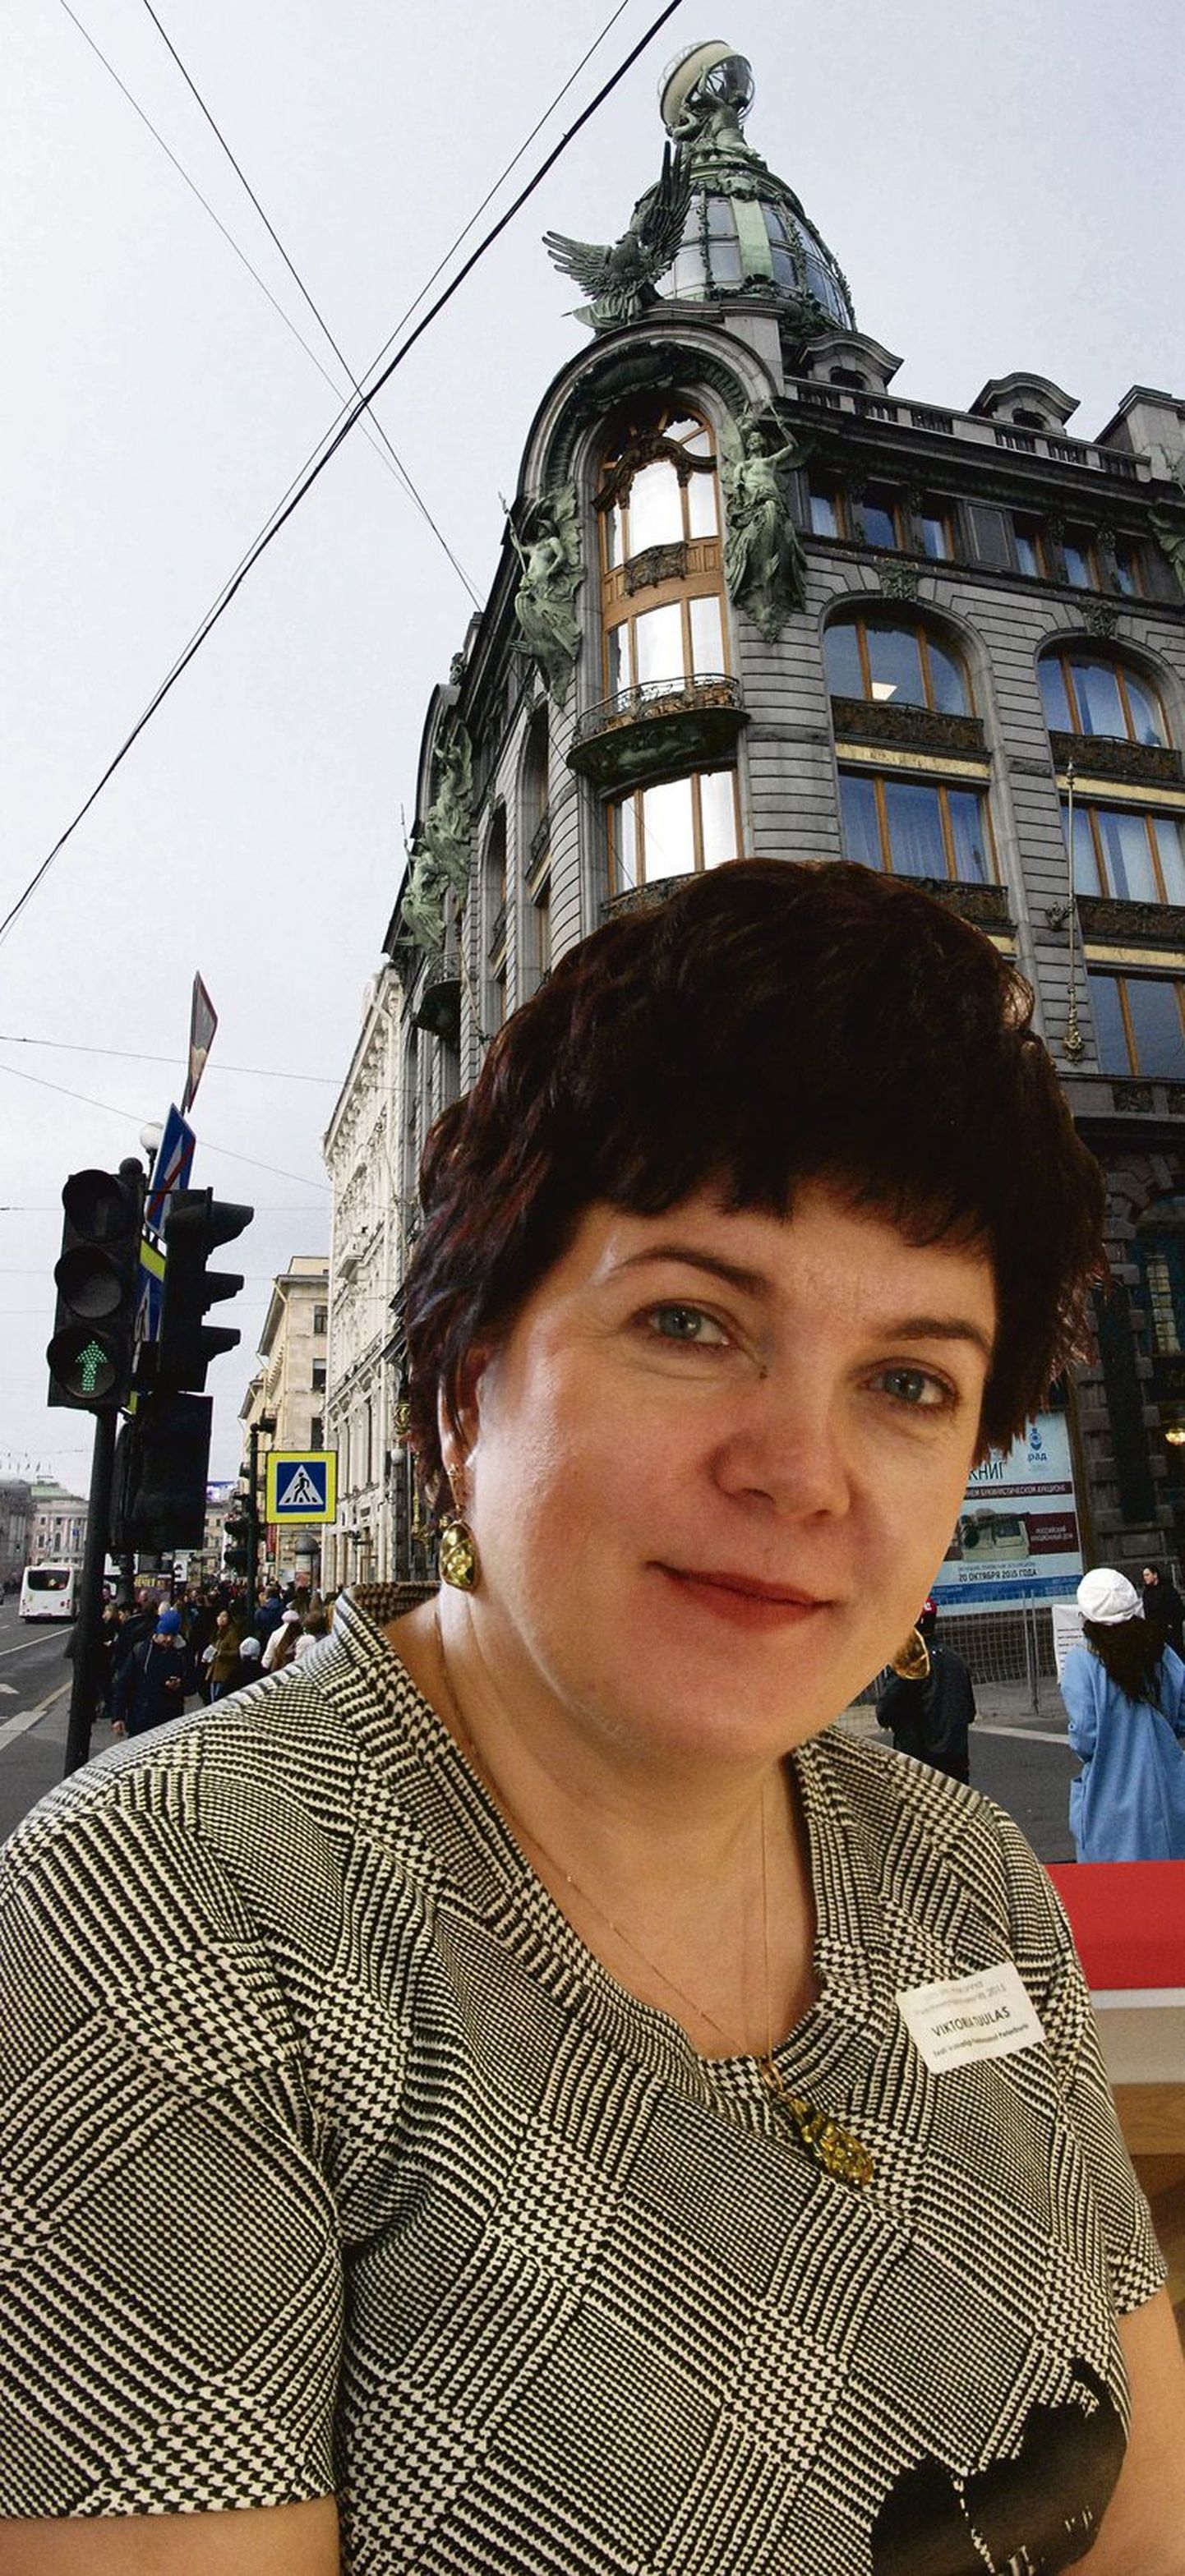 Viktoria Tuulas on 20aastase staažiga diplomaat. Alates 1. augustist 2013 on ta olnud Eesti vabariigi peakonsul Peterburis. Tema töökoht on Peterburi kesklinnas, Bolšaja Monetnaja 14.